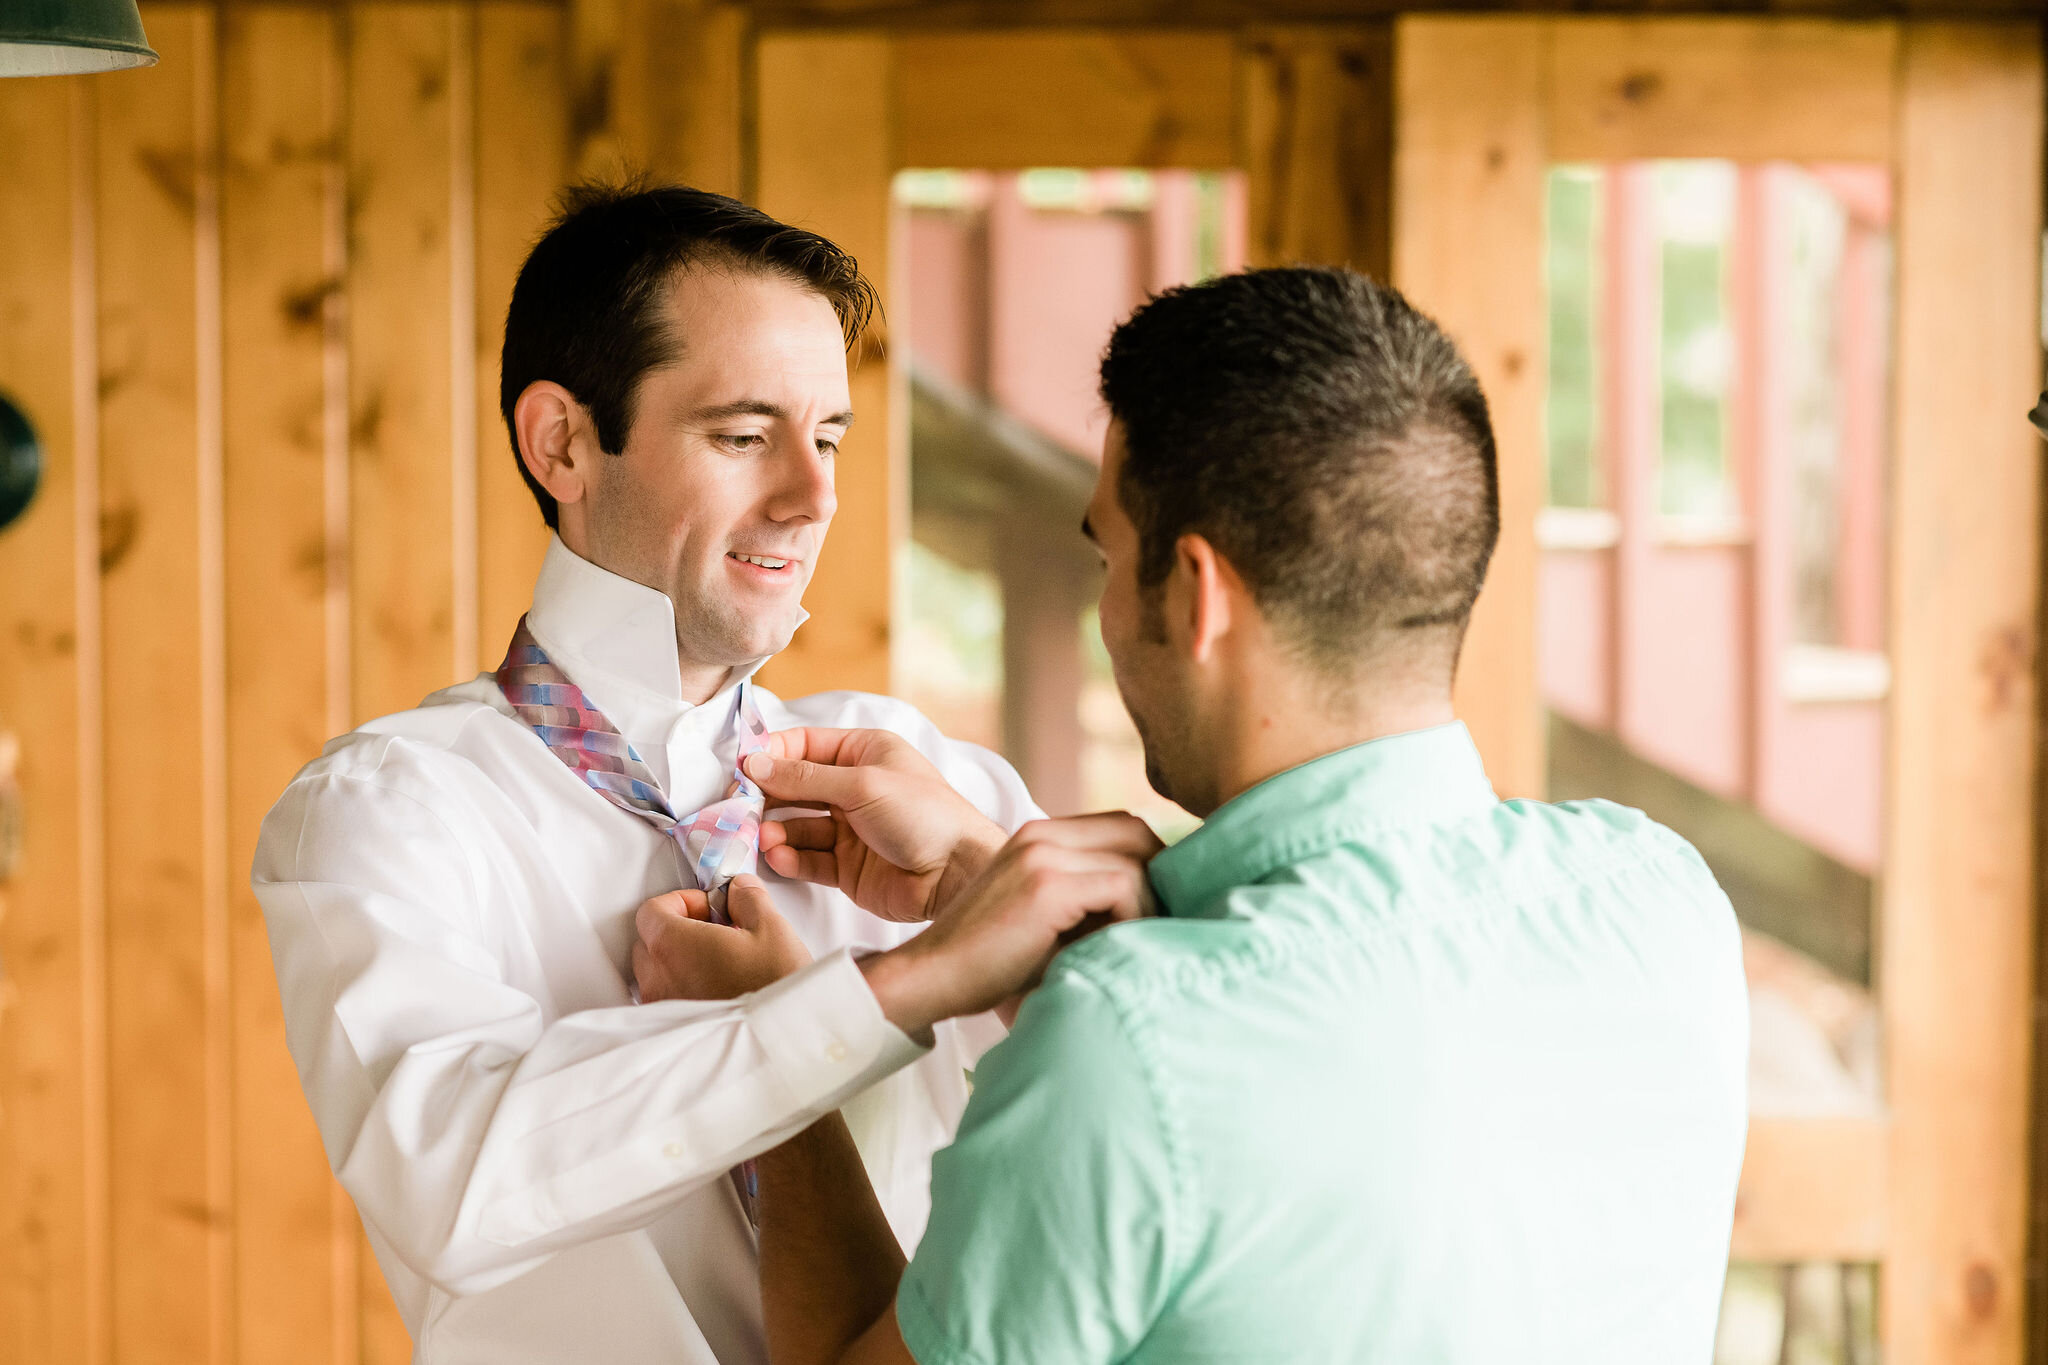 Best man helping groom put his tie on